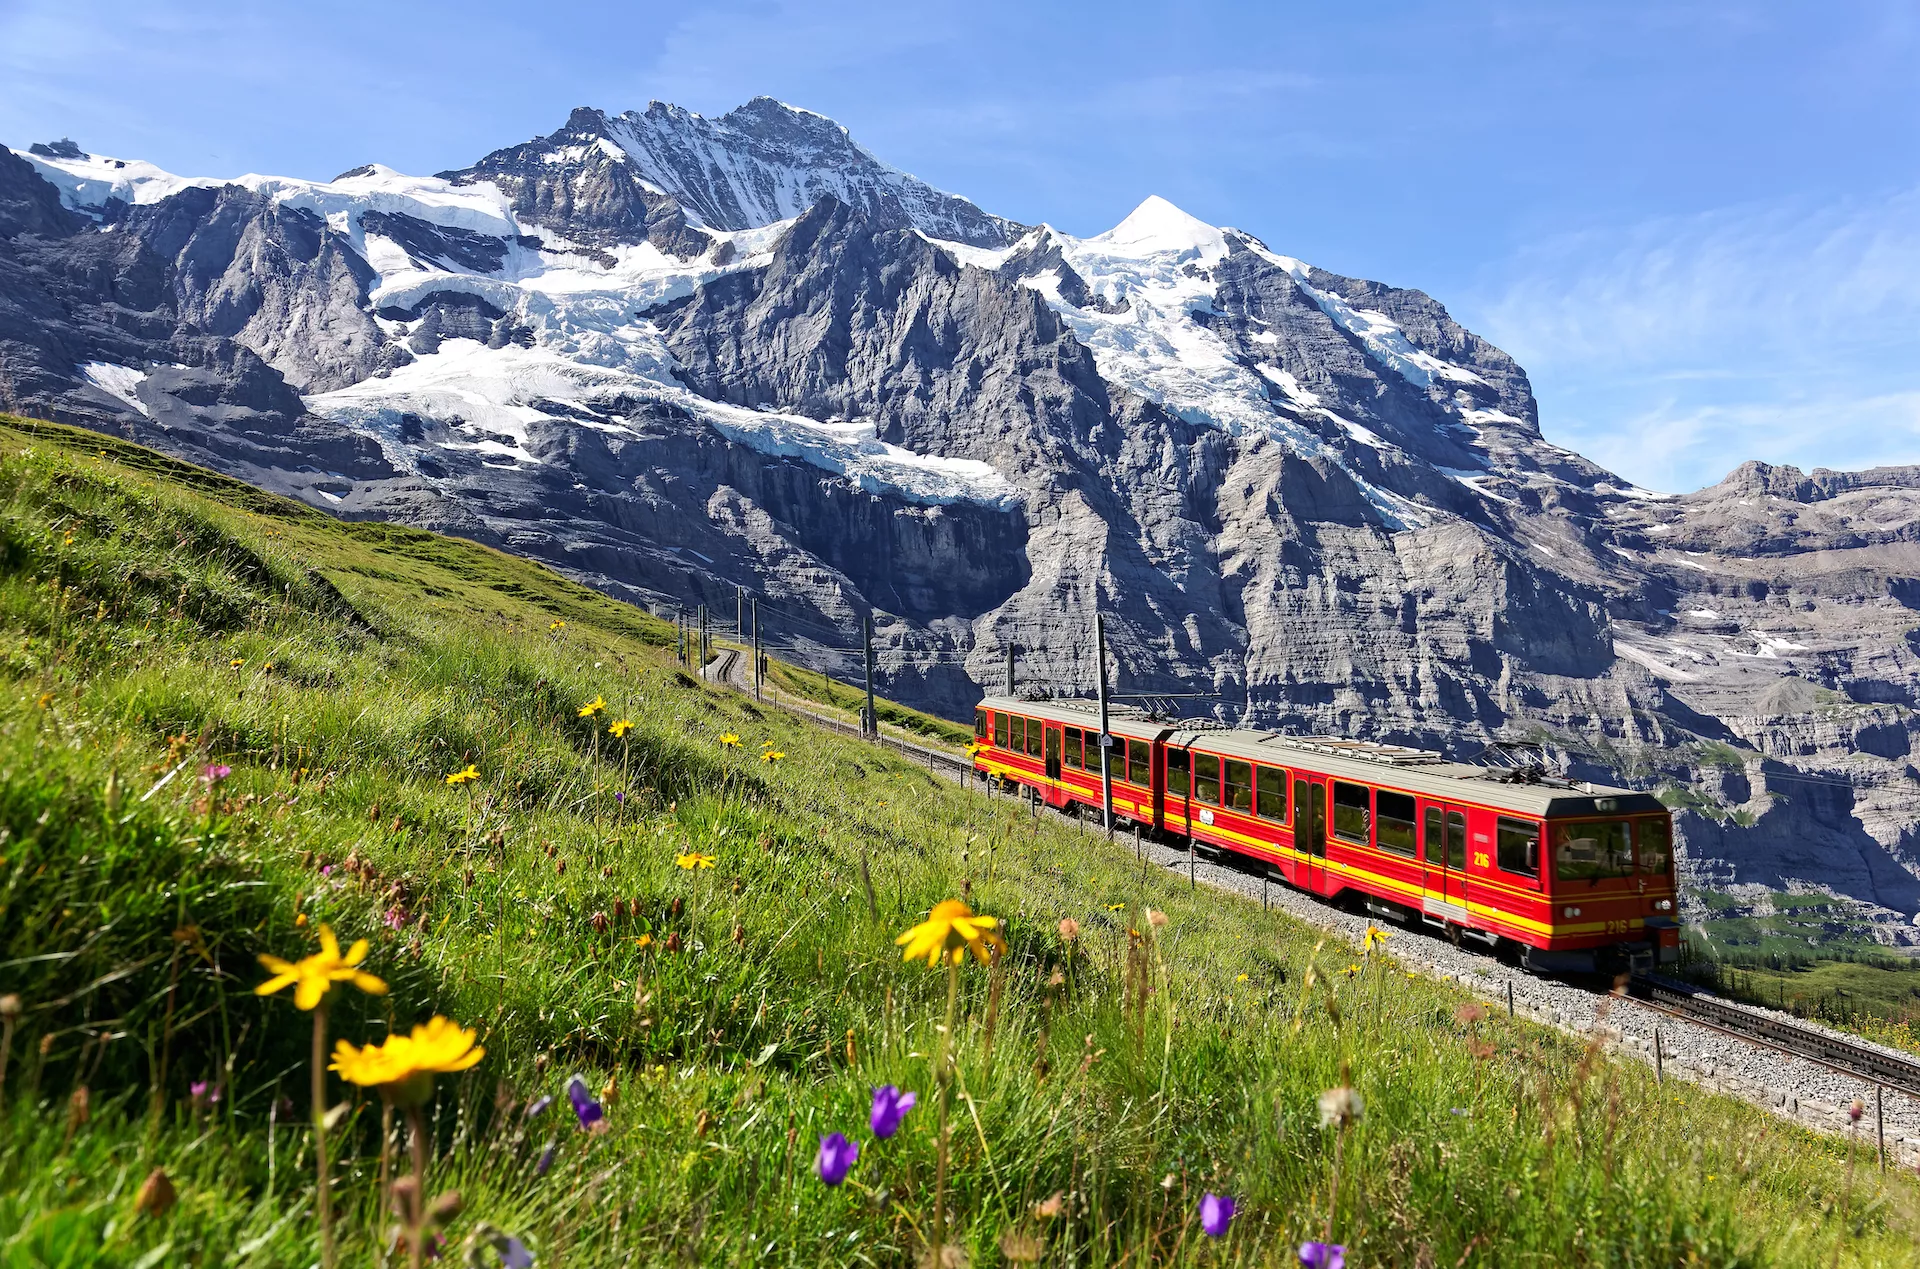 A tourist train travels on Jungfrau Railway from Jungfraujoch to Kleine Scheidegg